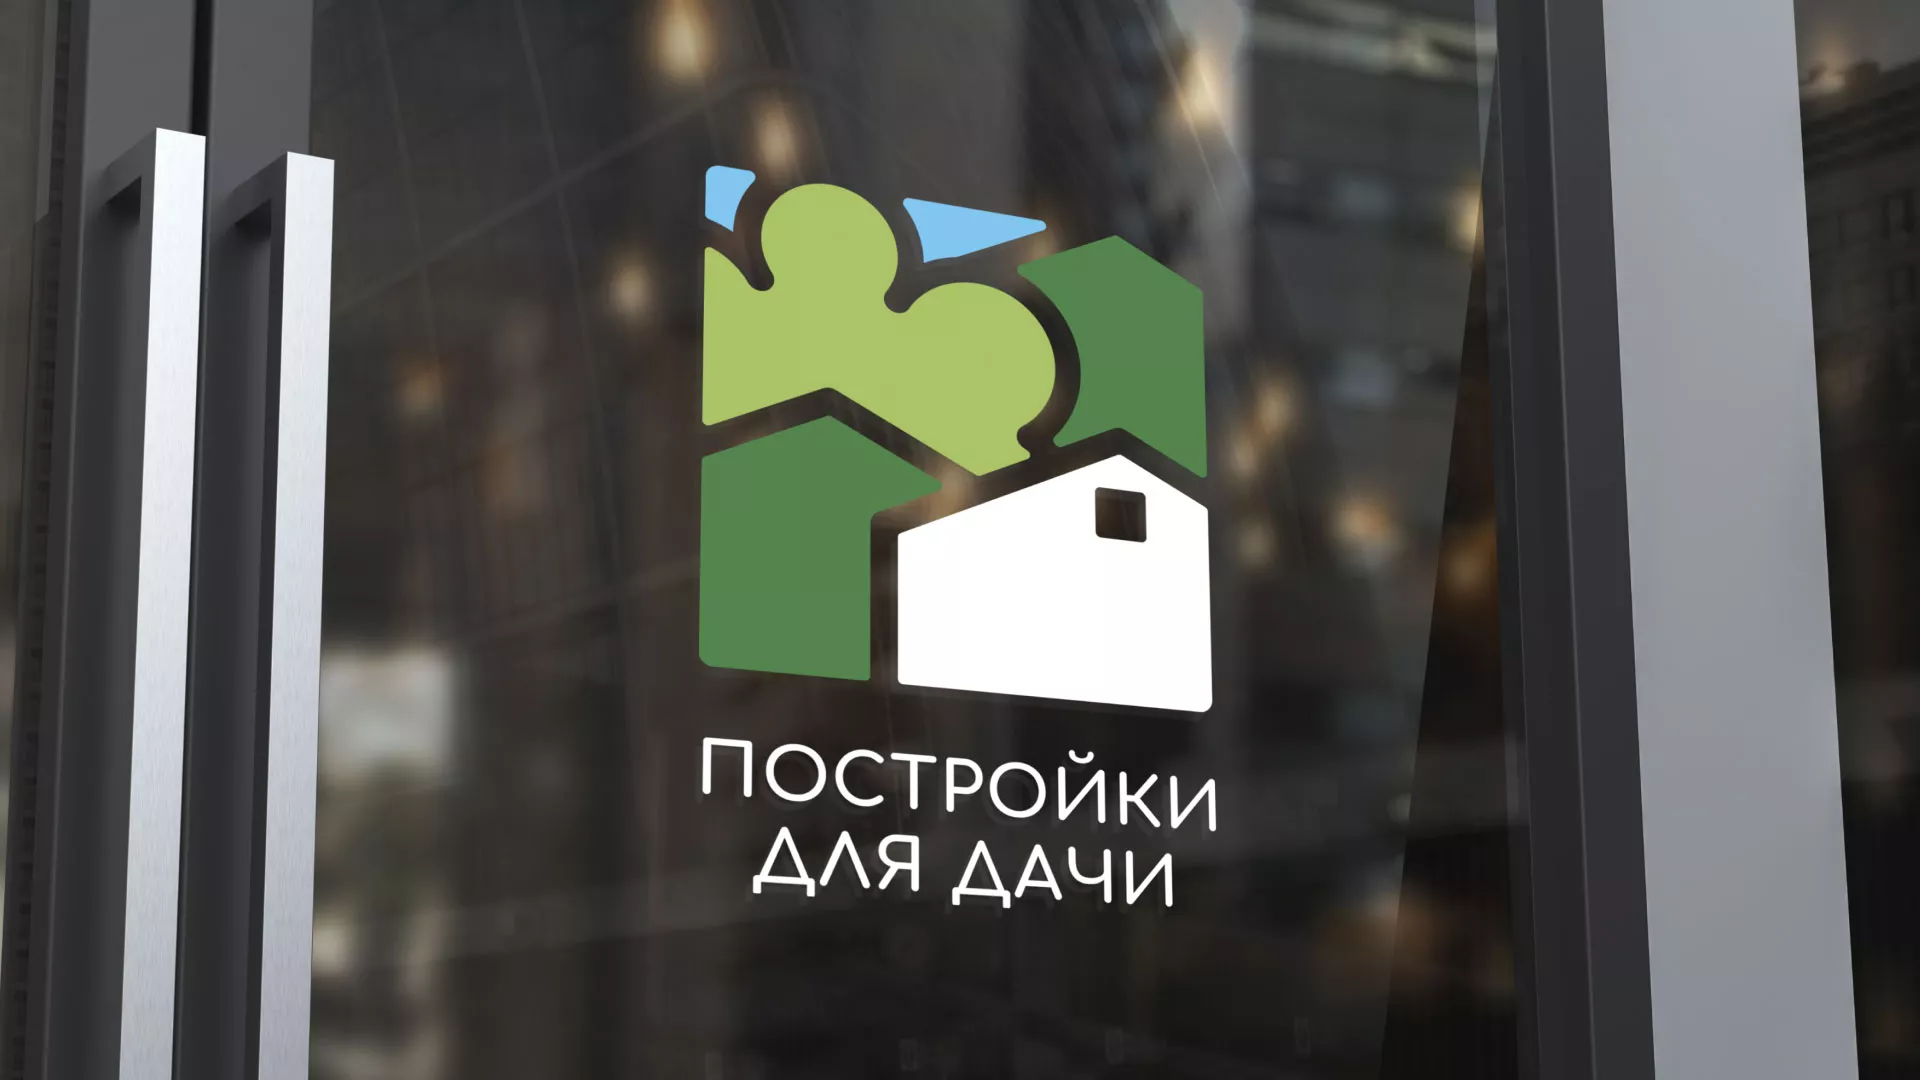 Разработка логотипа в Белокурихе для компании «Постройки для дачи»